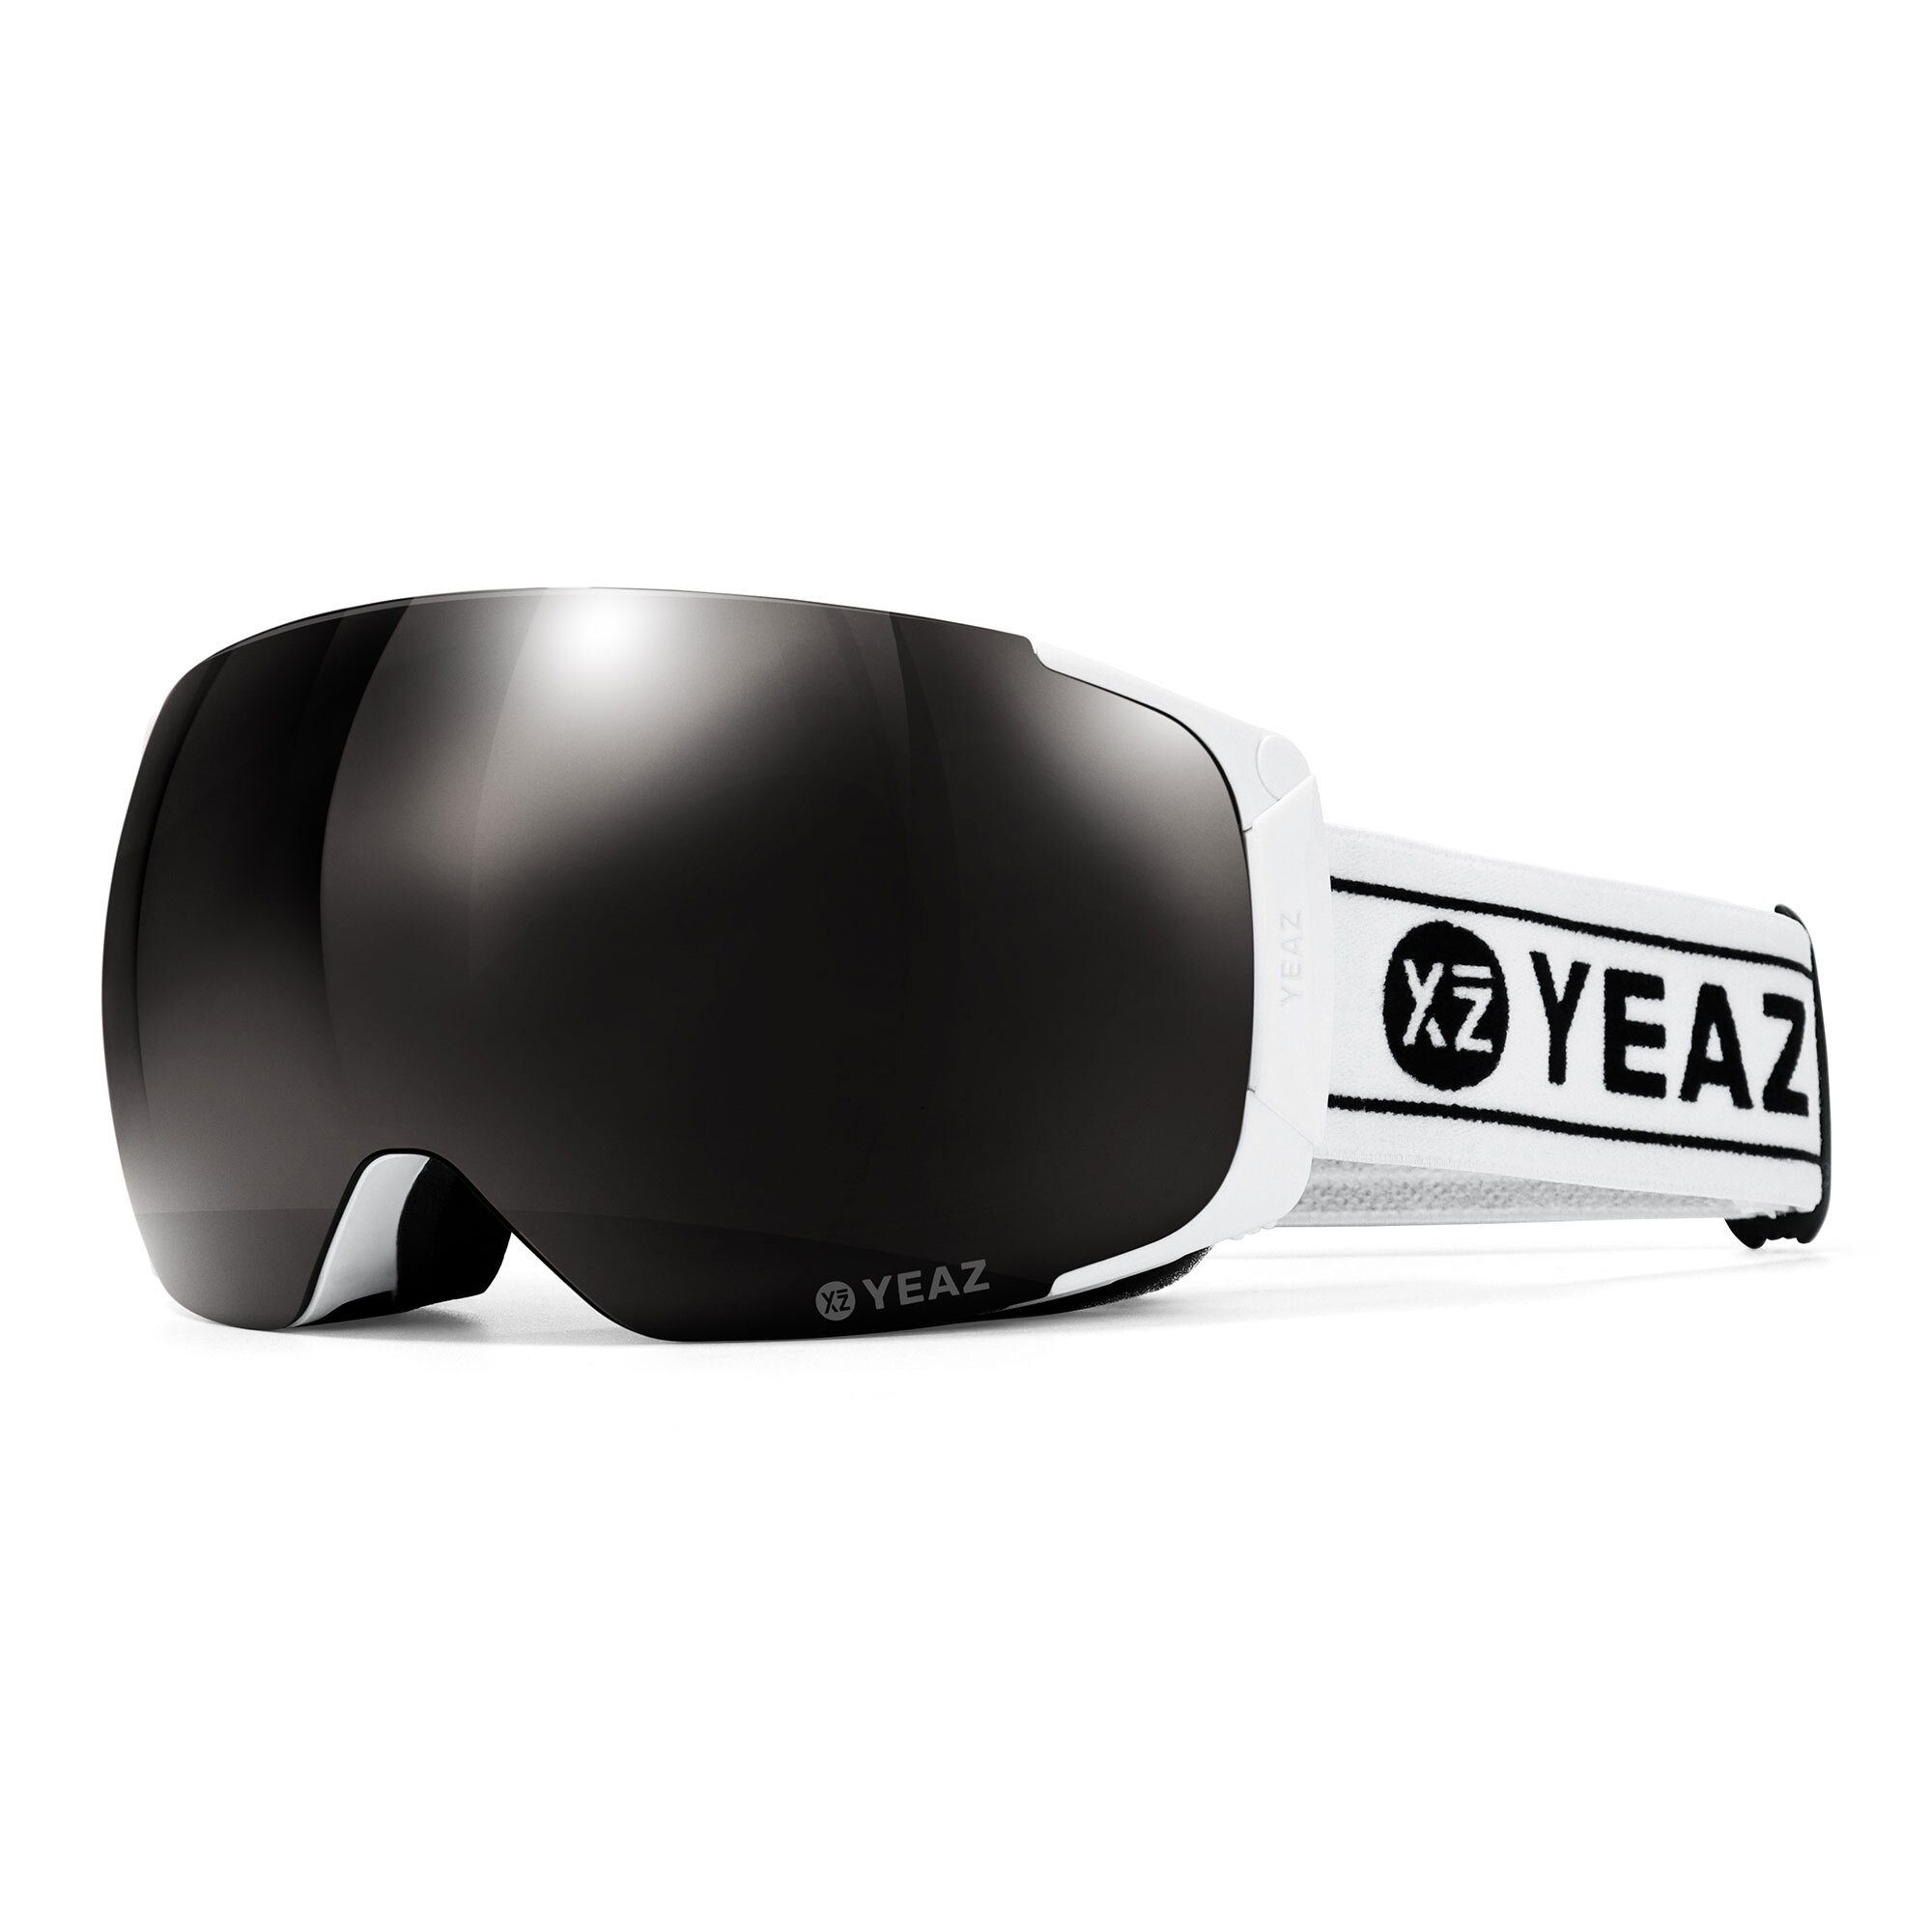 Anti-Bruch-System hohe für und snowboard-brille, YEAZ Erwachsene Skibrille ski- Snowboardbrille Kratzfestigkeit und TWEAK-X und und Jugendliche, Premium-Ski-